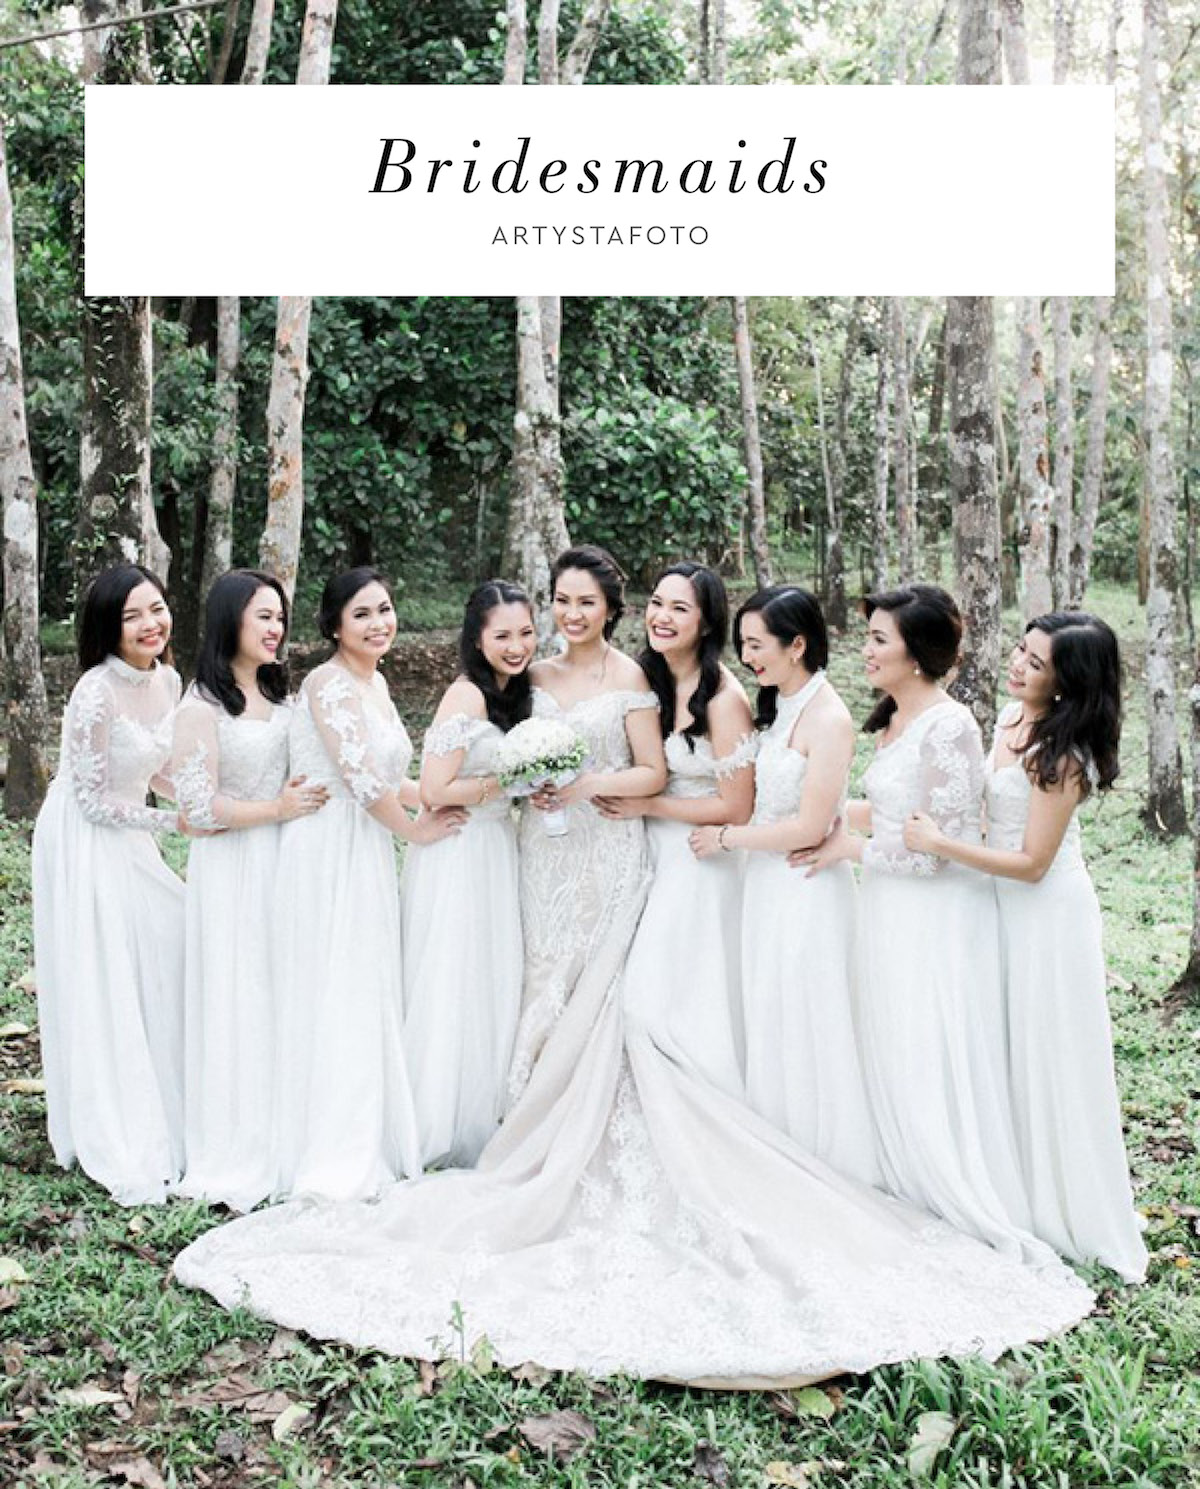 Bridesmaids Artystafoto